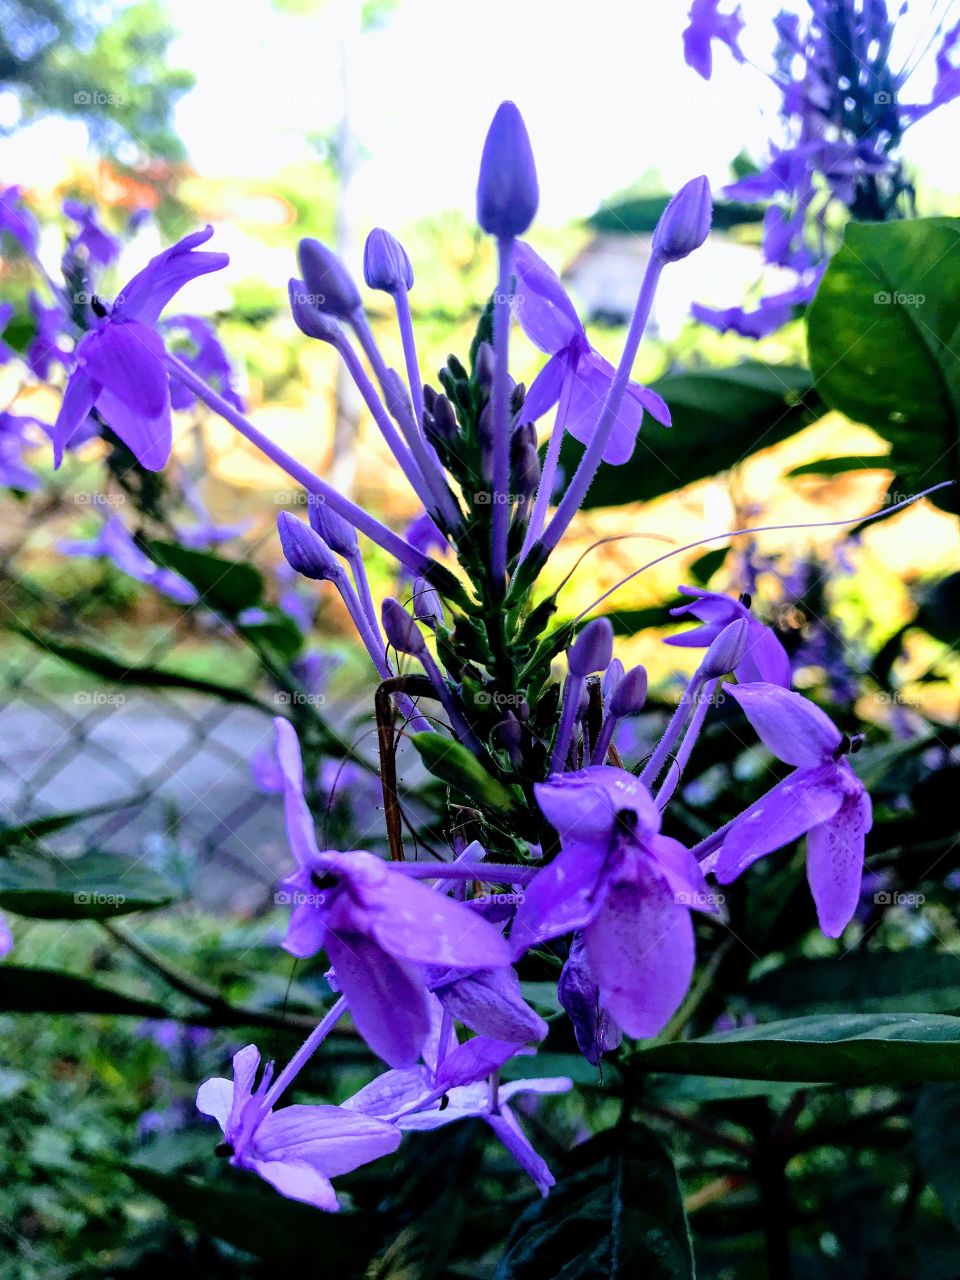 Flower from my garden...bright purple...